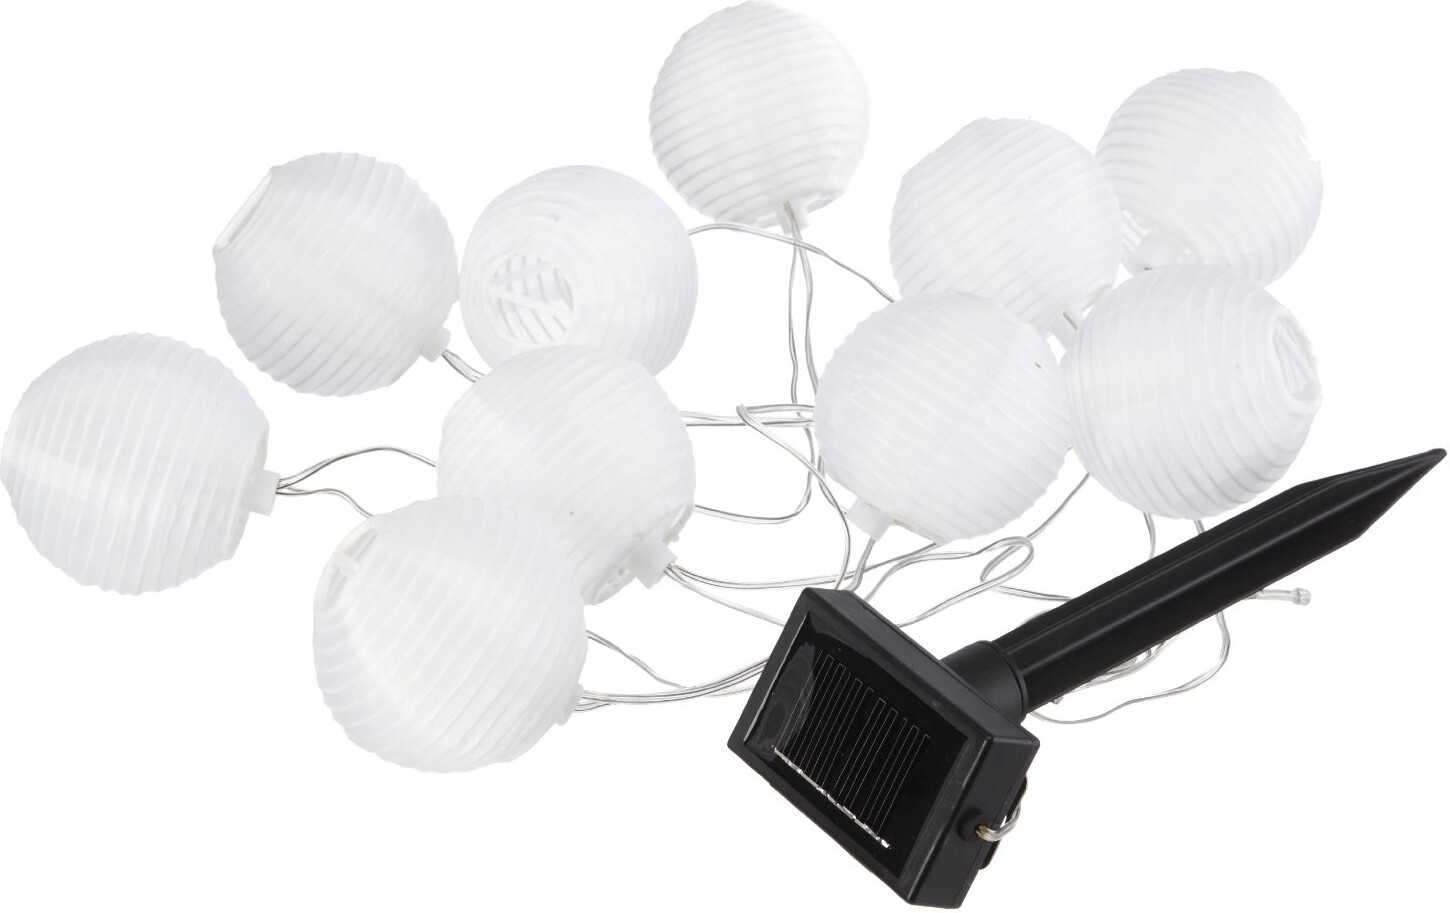 Solar-Lichterkette mit 10 LED-Lampions, altrosa, weinrot, weiß